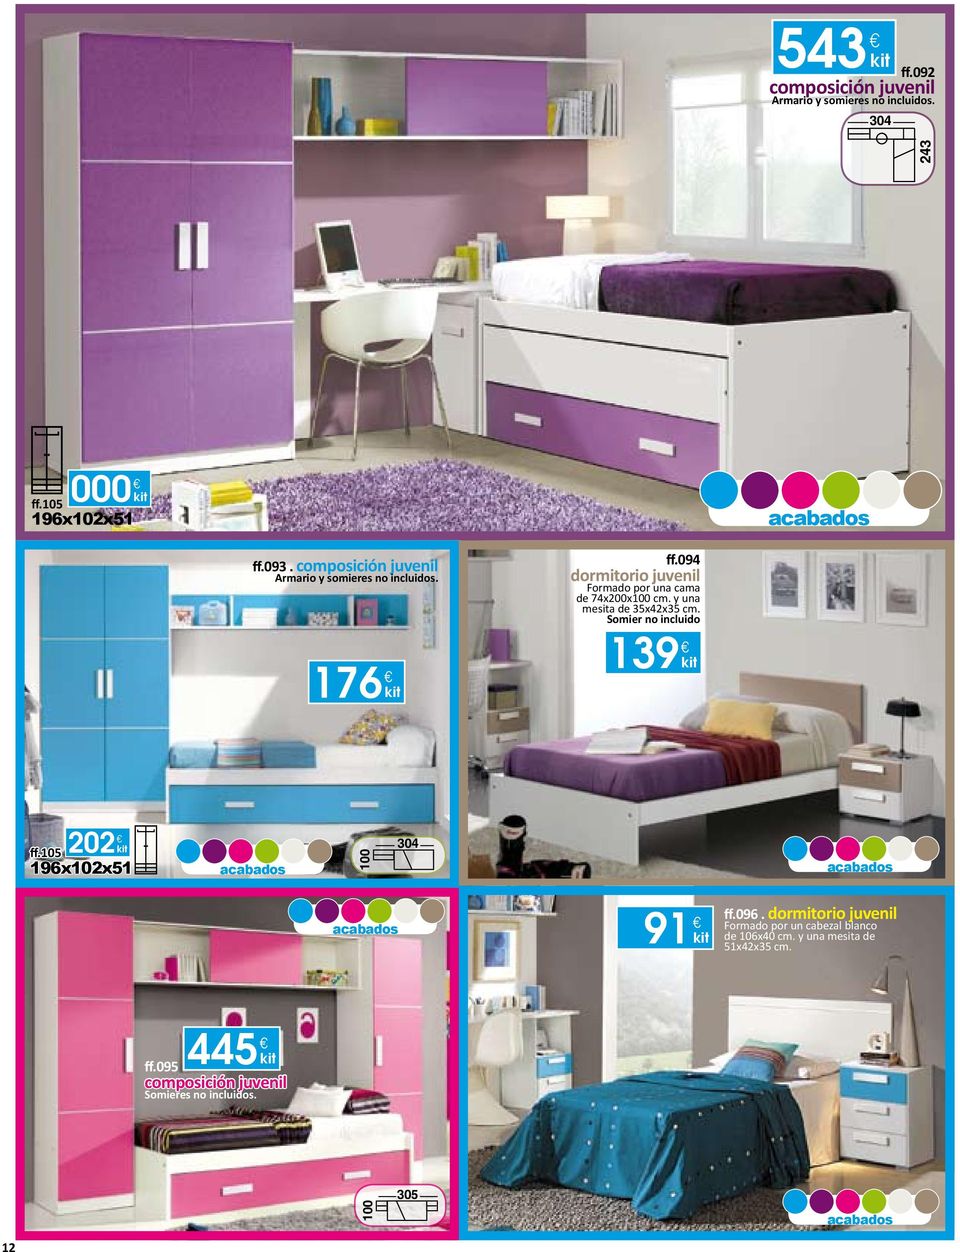 094 dormitorio juvenil Formado por una cama de 74x200x100 cm. y una mesita de 35x42x35 cm.